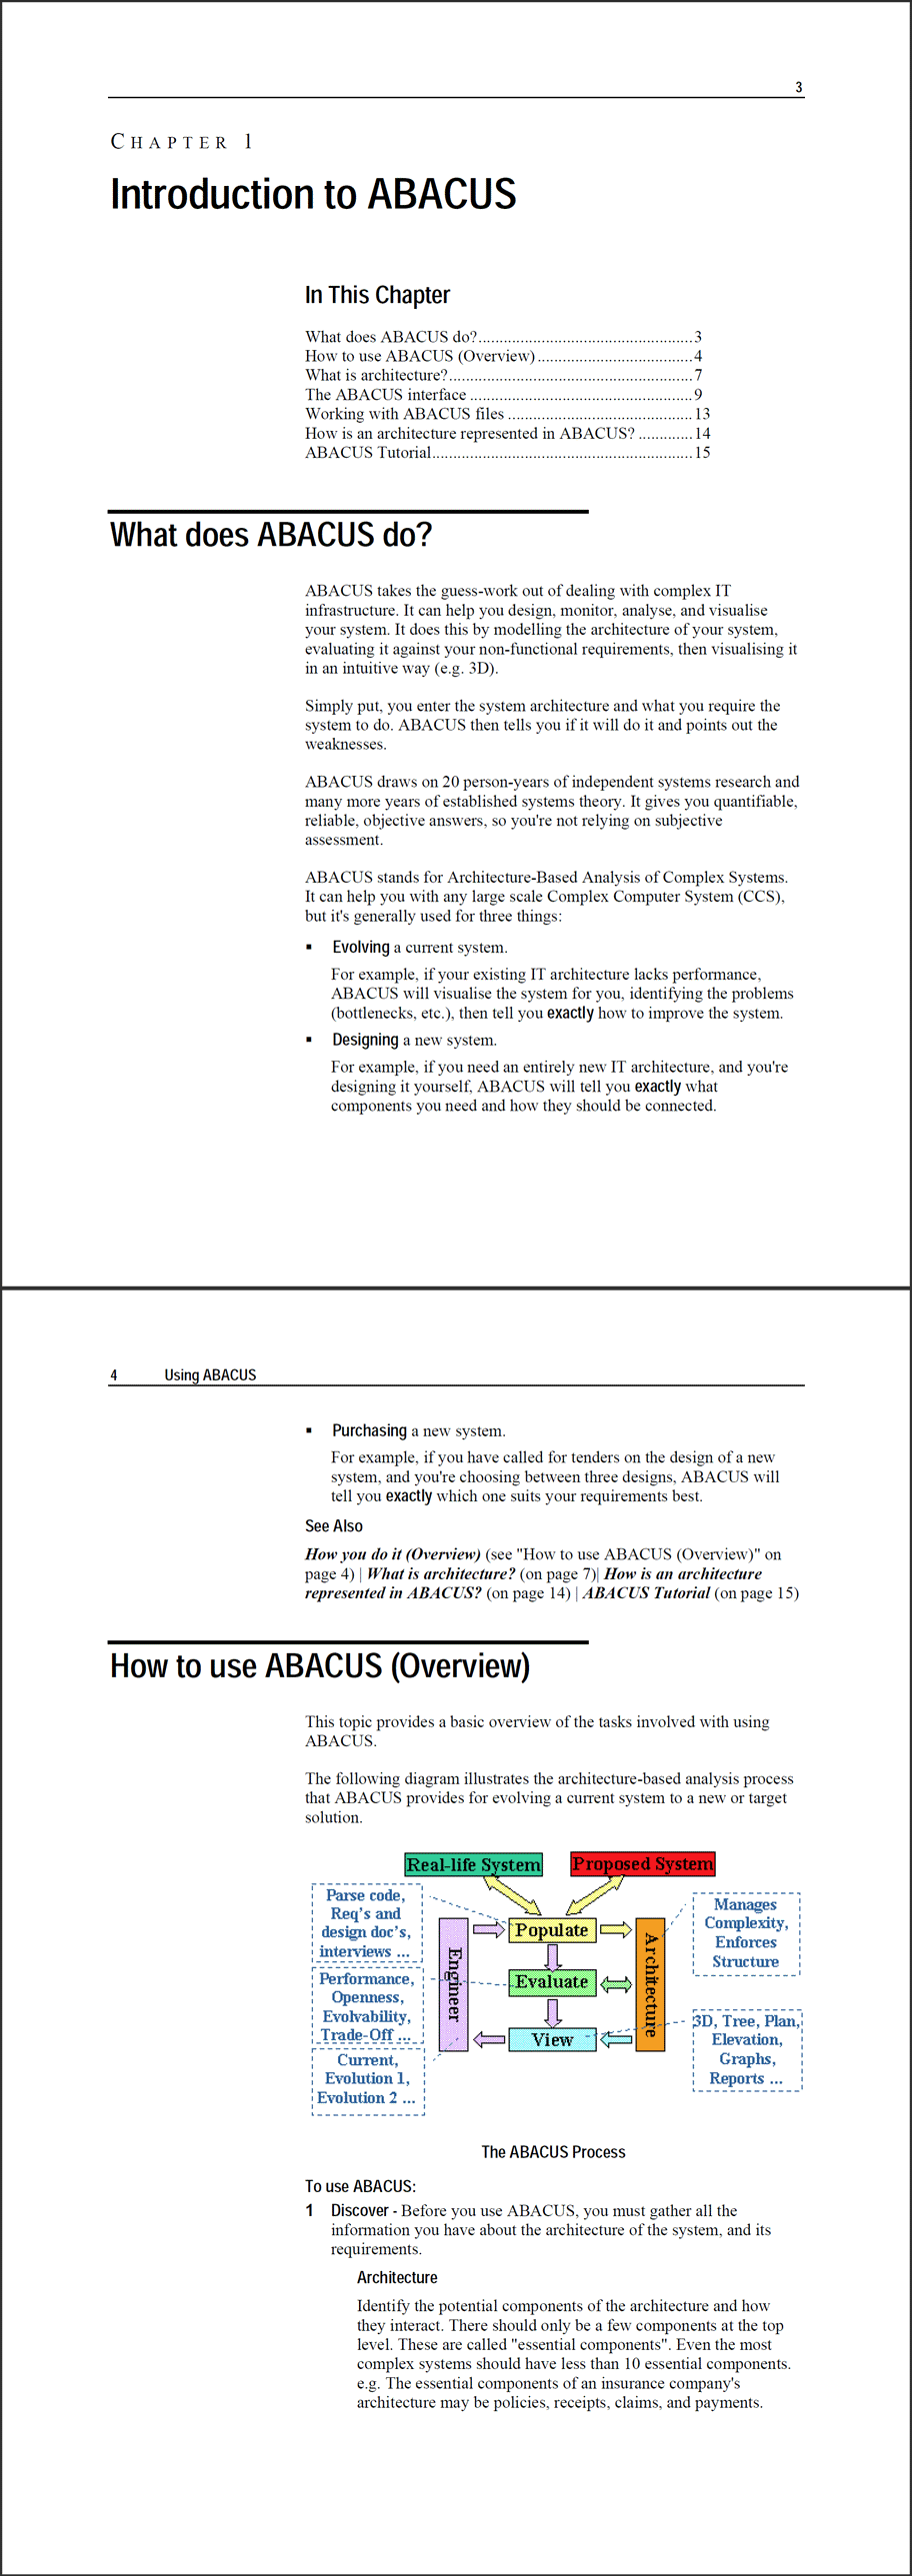 ABACUS Printed Manual